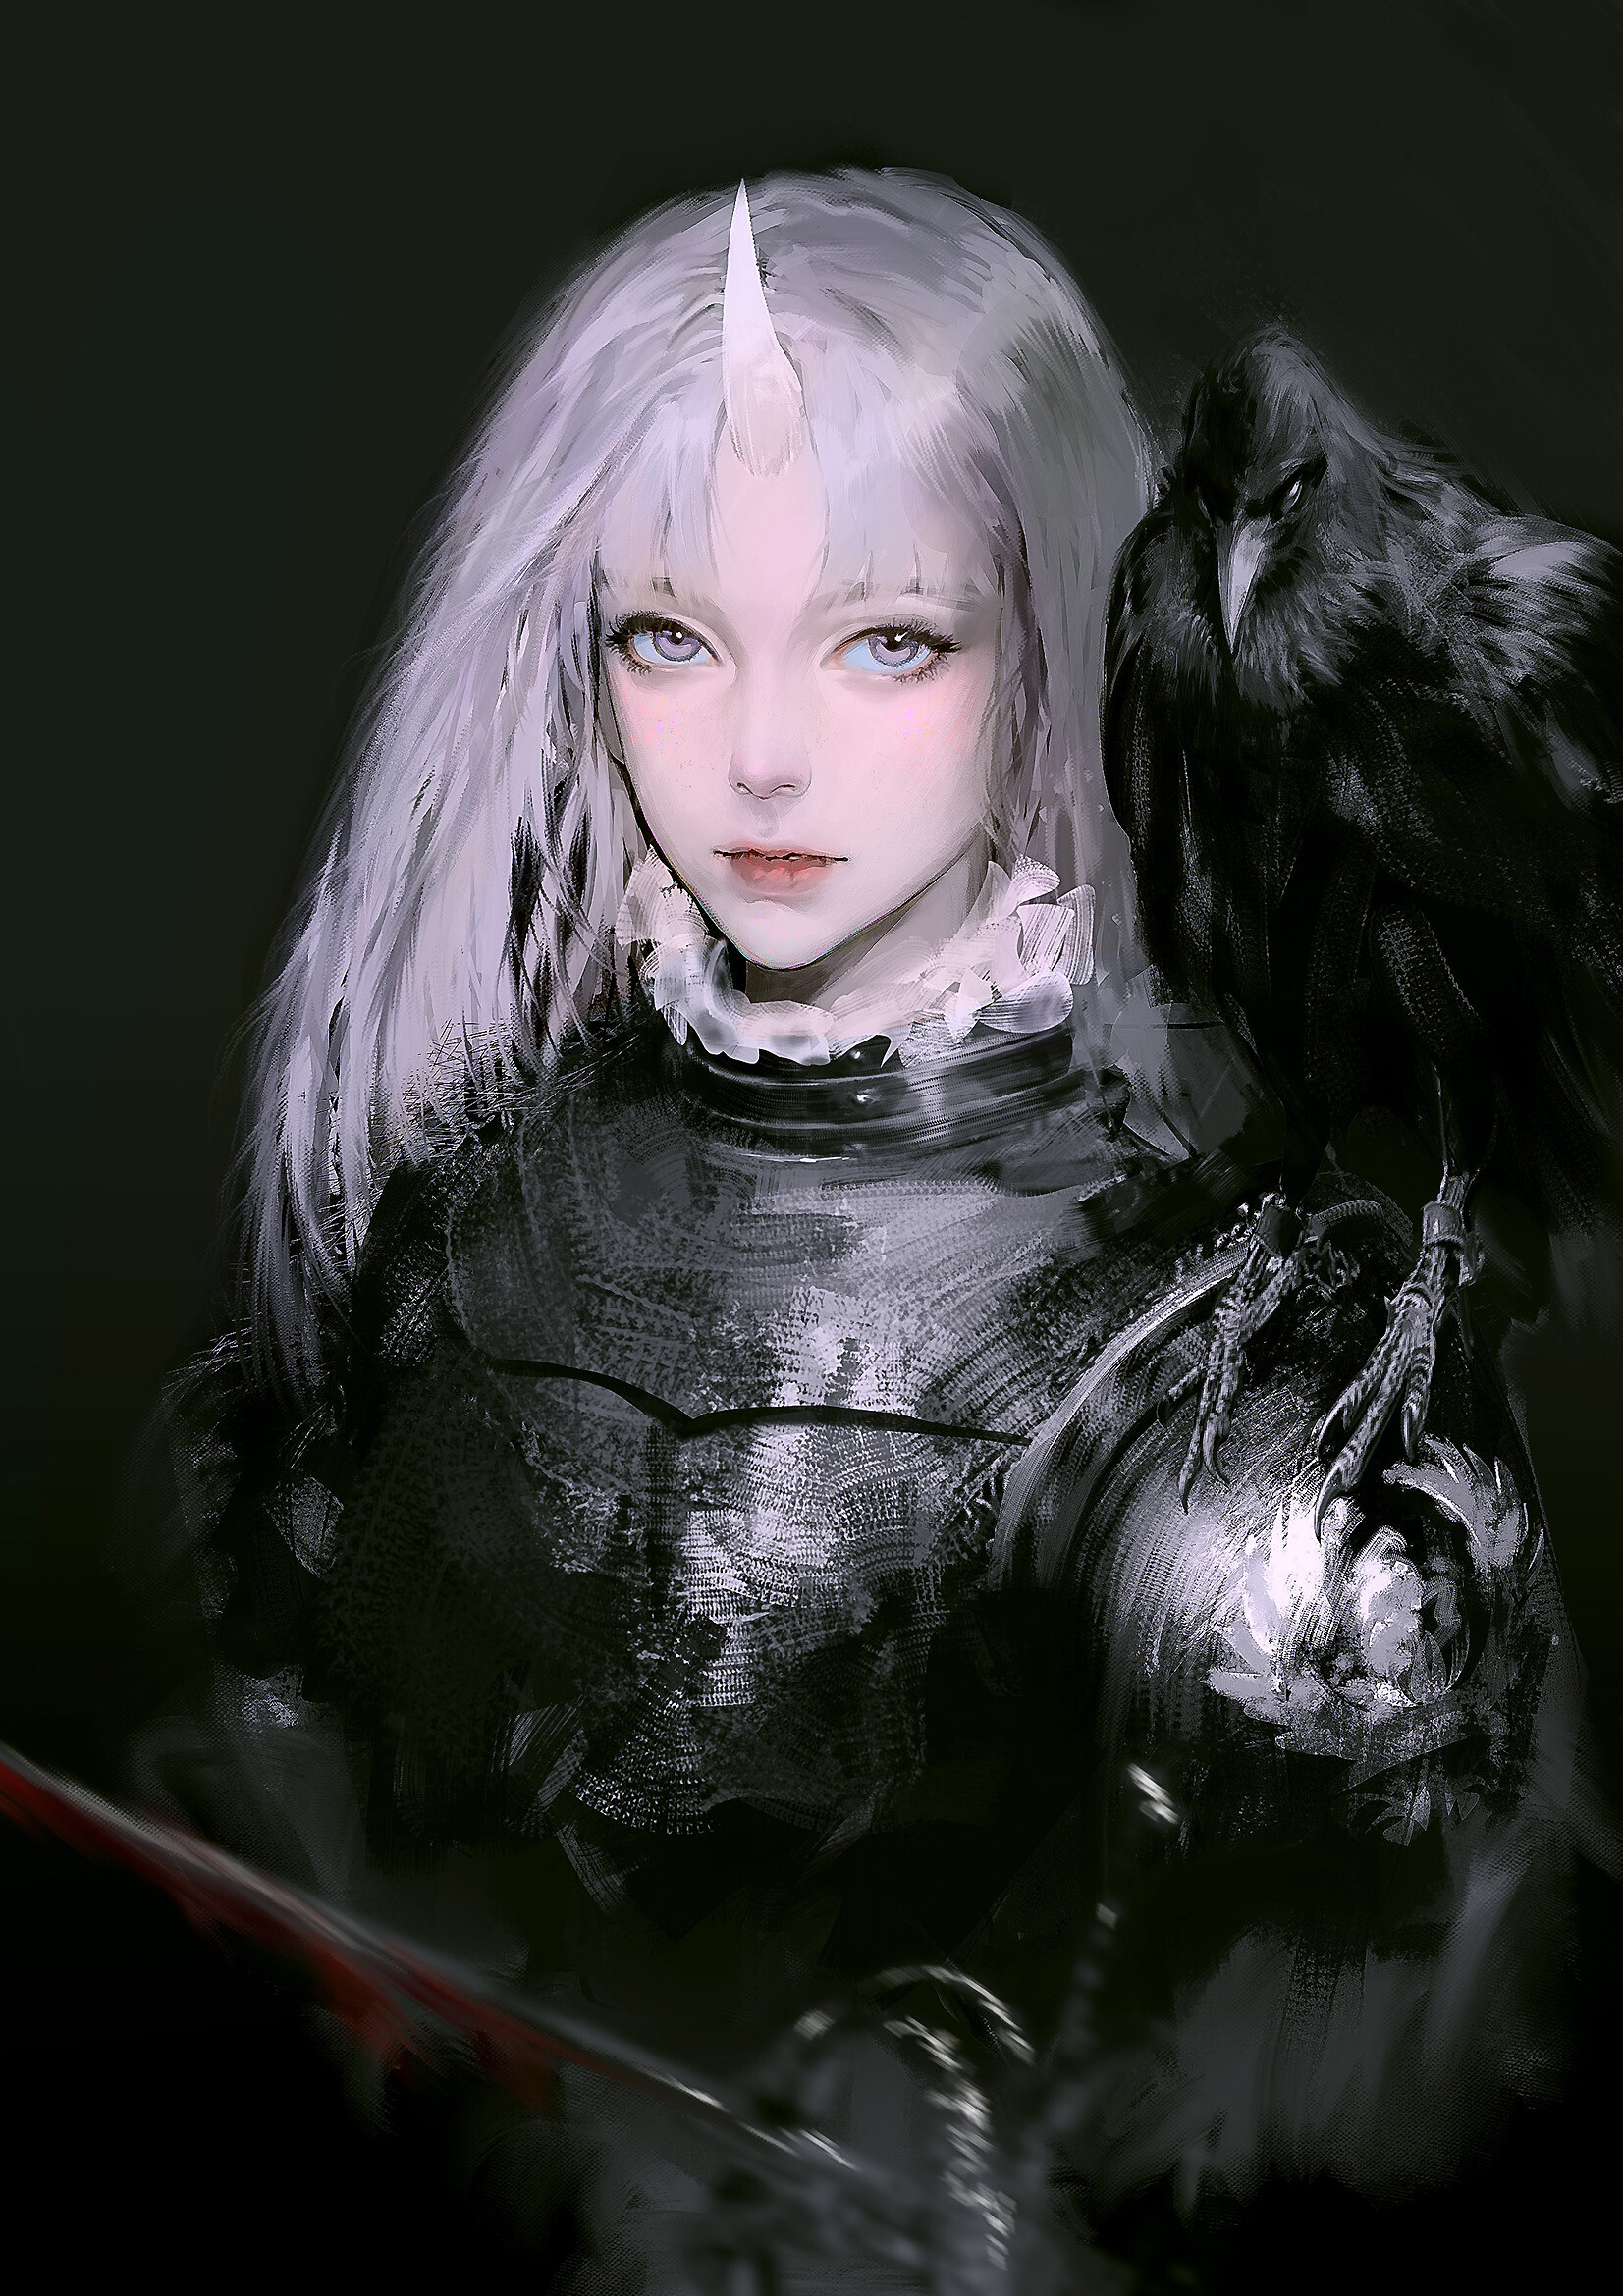 ArtStation - armor girl